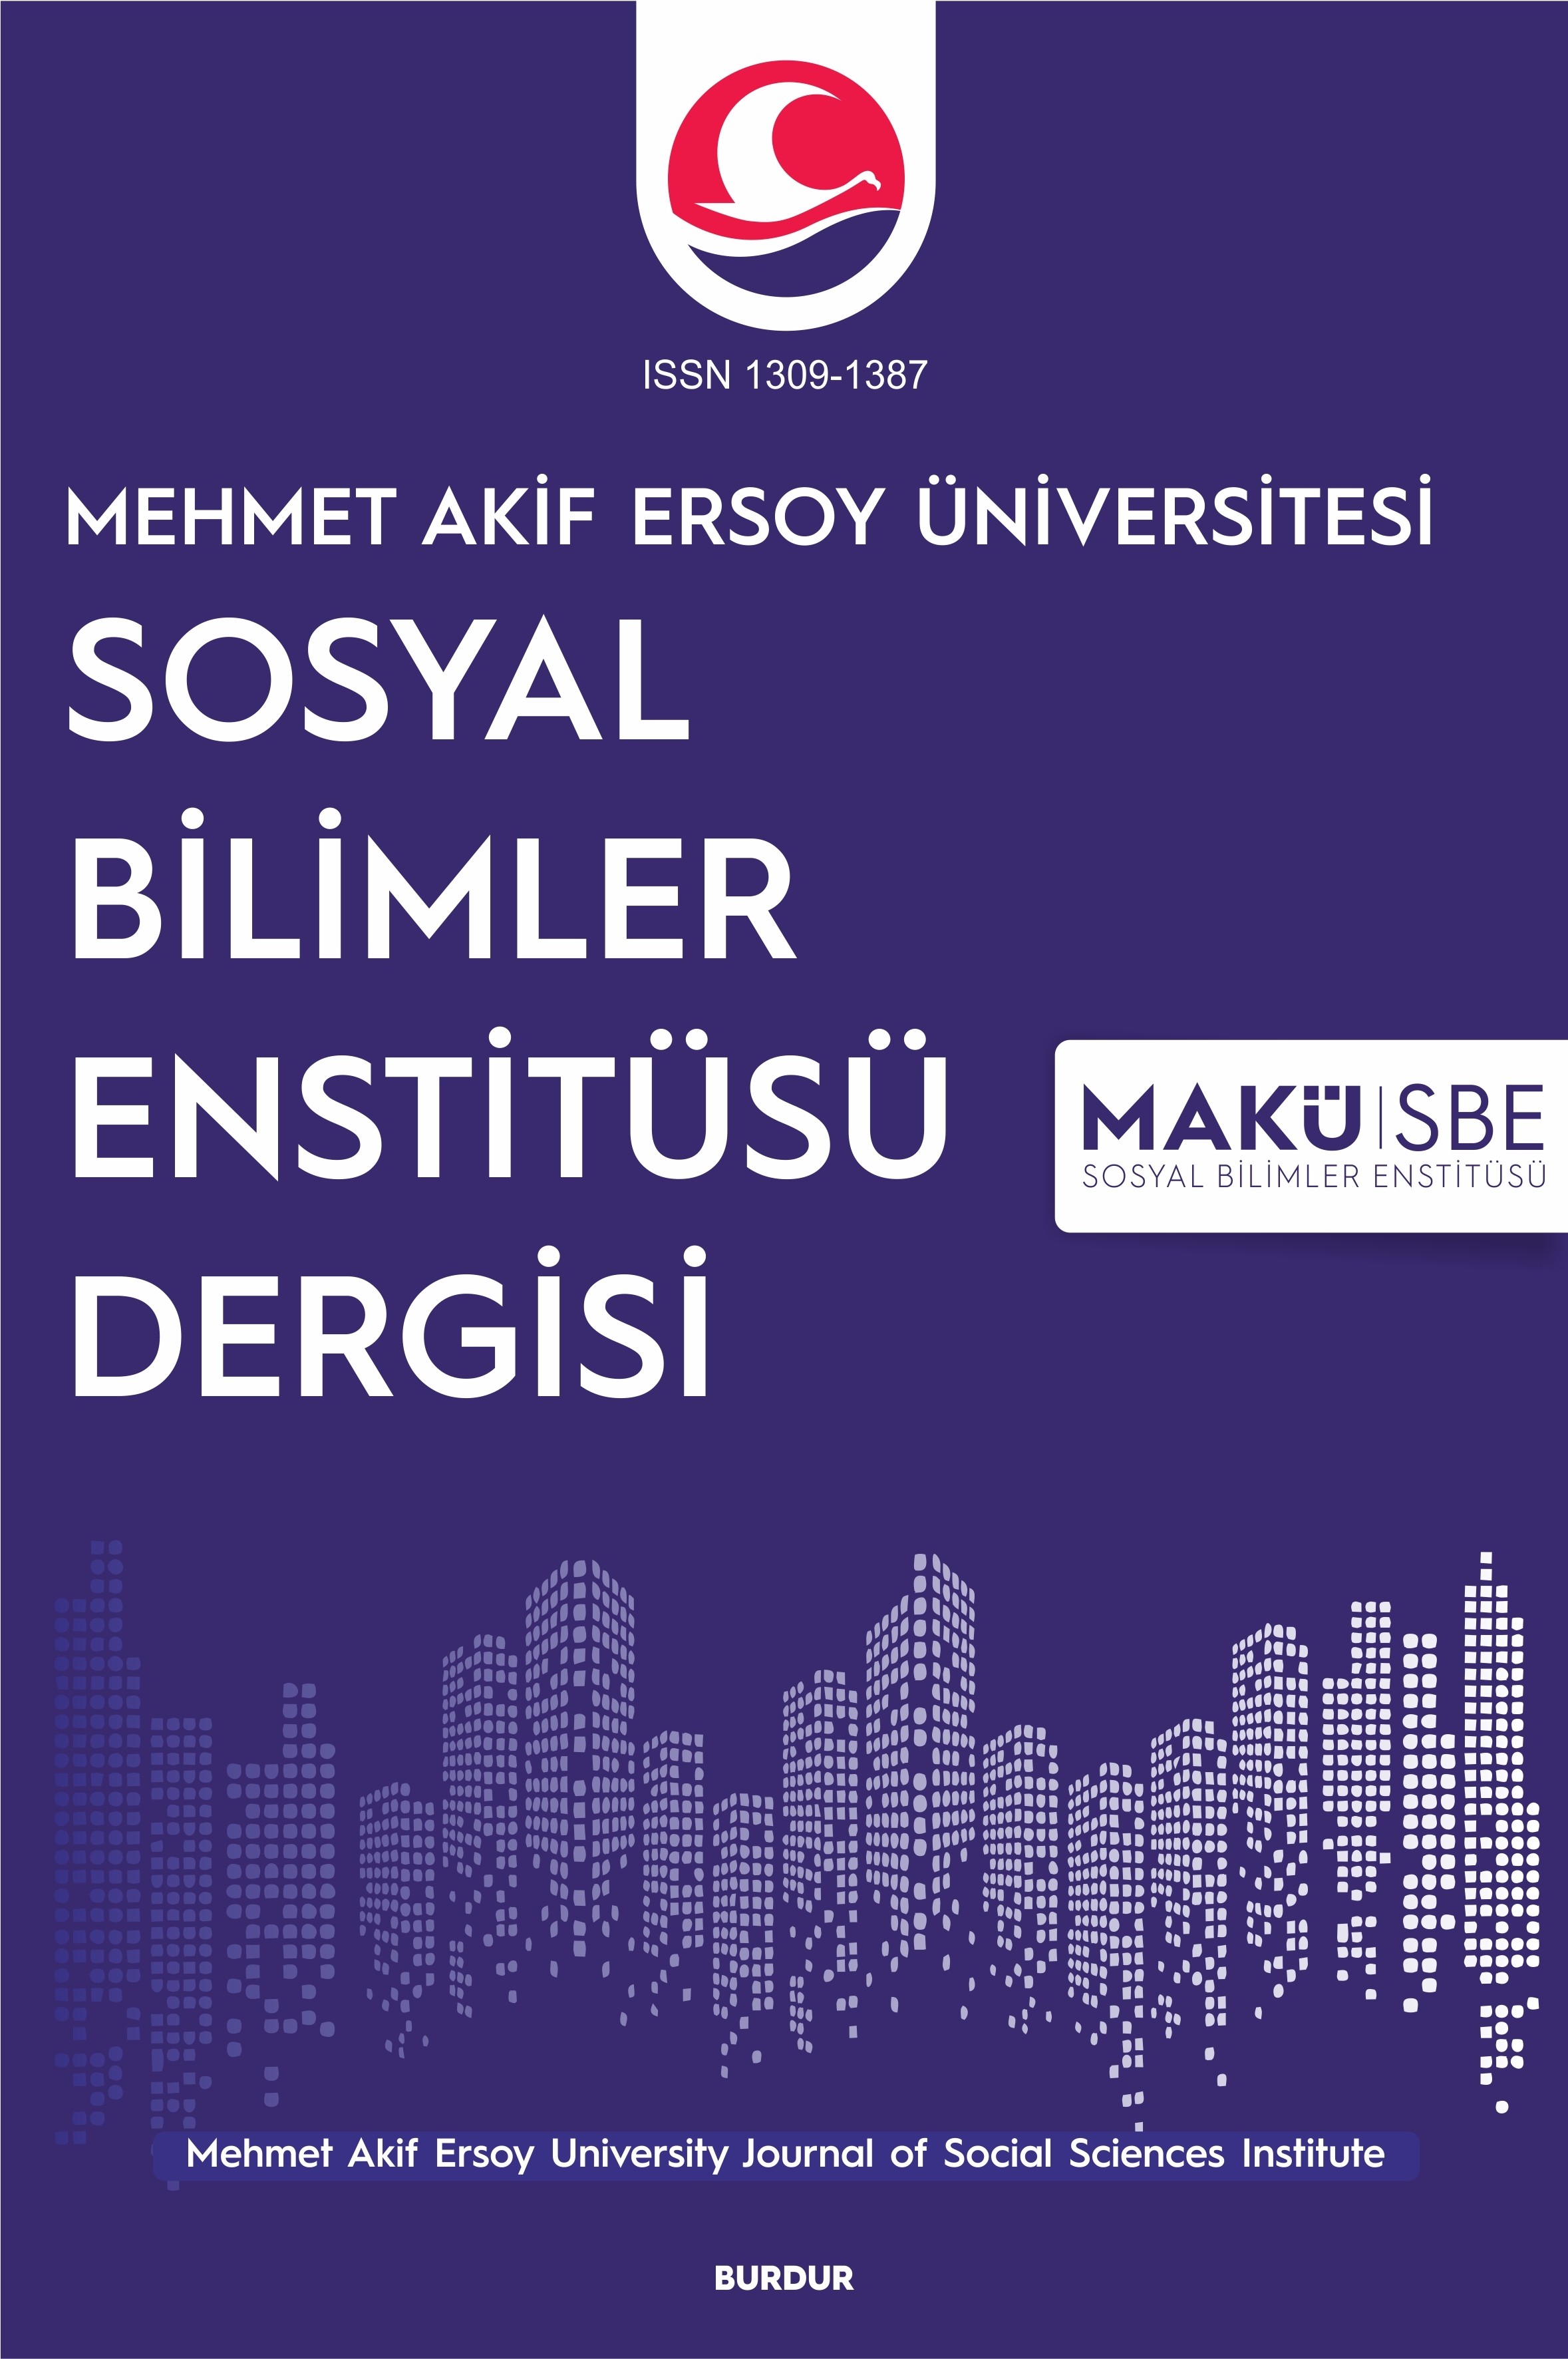 Mehmet Akif Ersoy University Journal of Social Sciences Institute